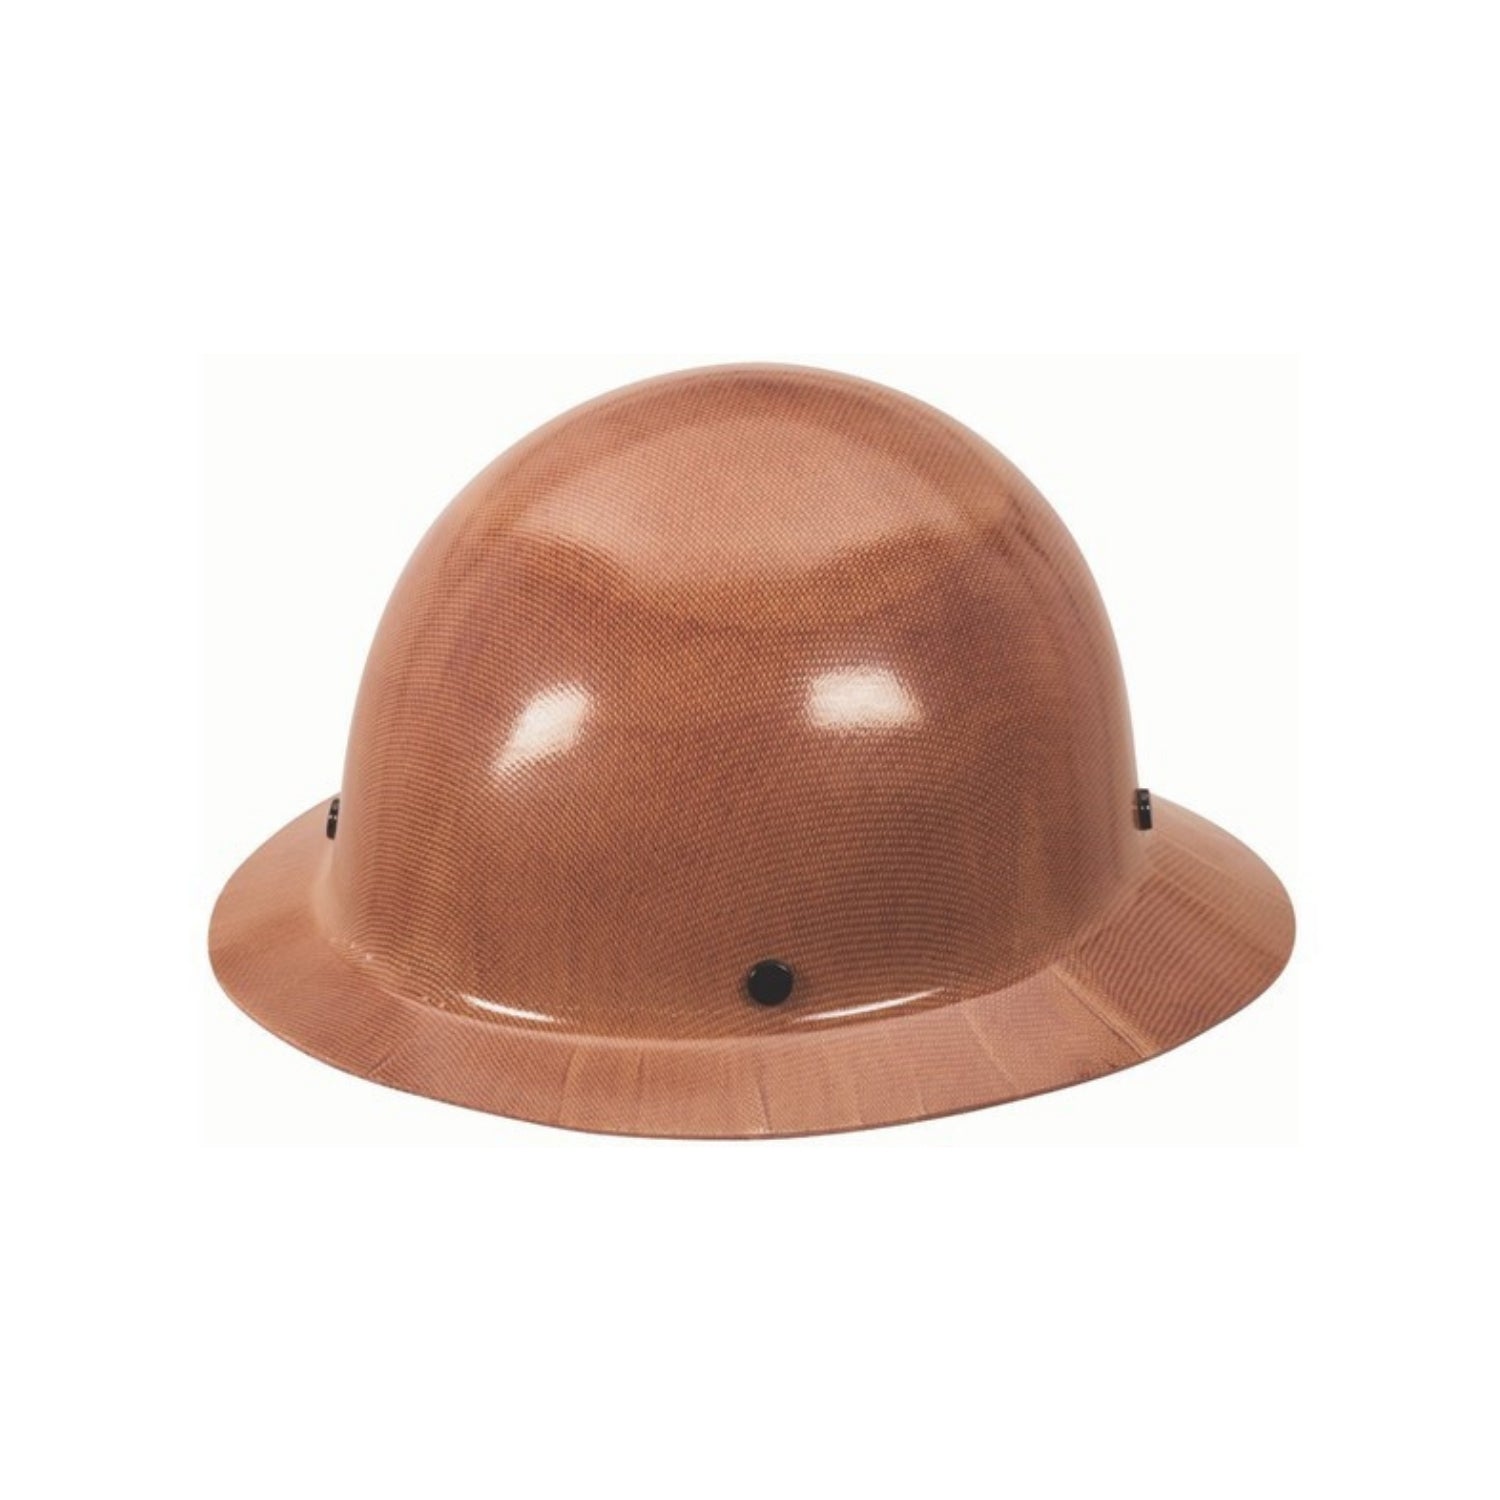 MSA Skullgard 475407- Protective Caps and Hats, Fas-Trac Ratchet, Hat, Natural Tan